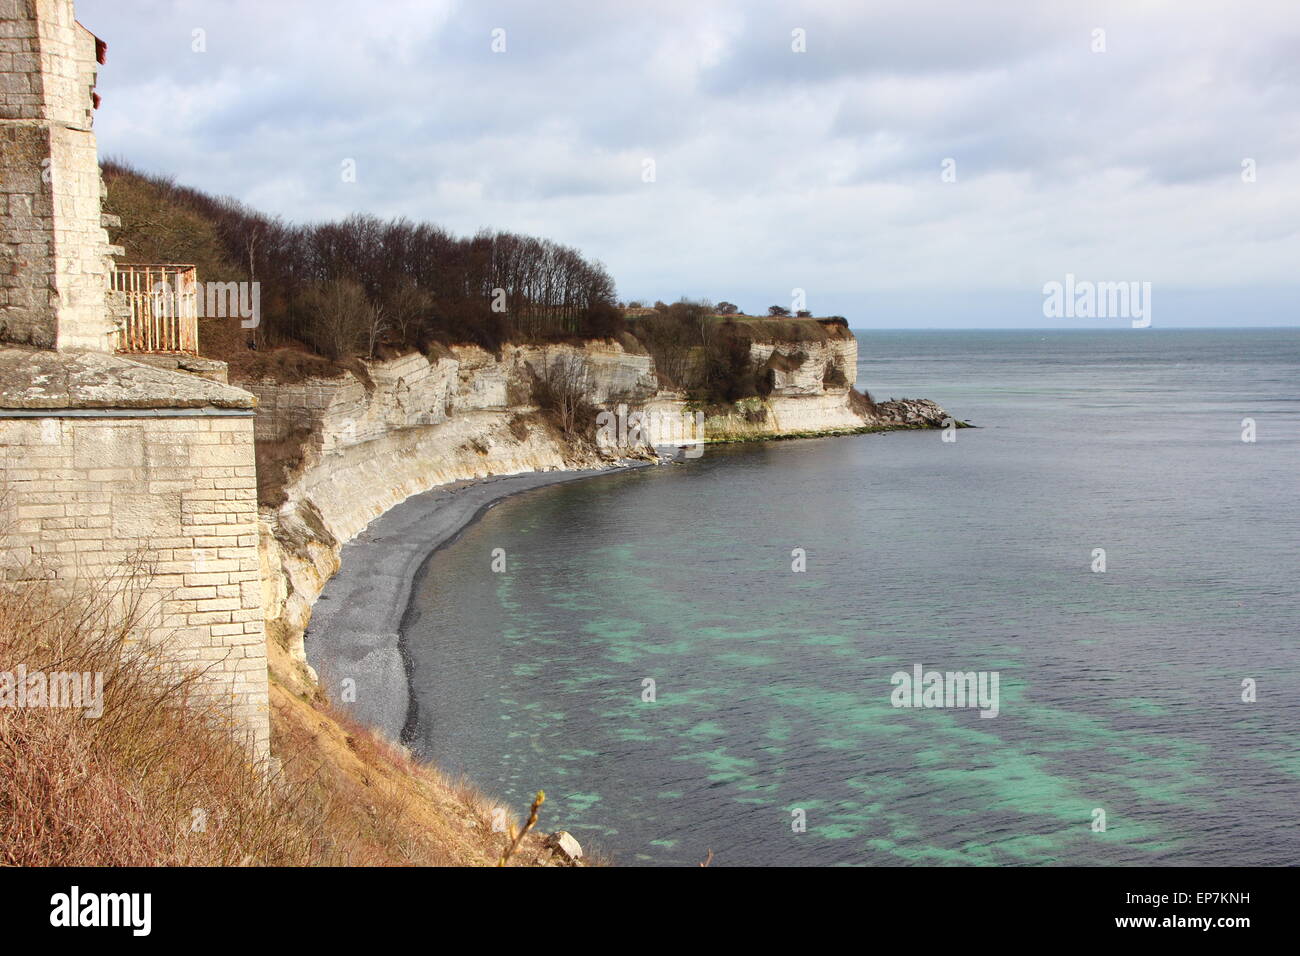 Patrimoine mondial Stevns Klint littoral avec vue sur la mer et la falaise blanche et réflexions d'argile calcaire Banque D'Images